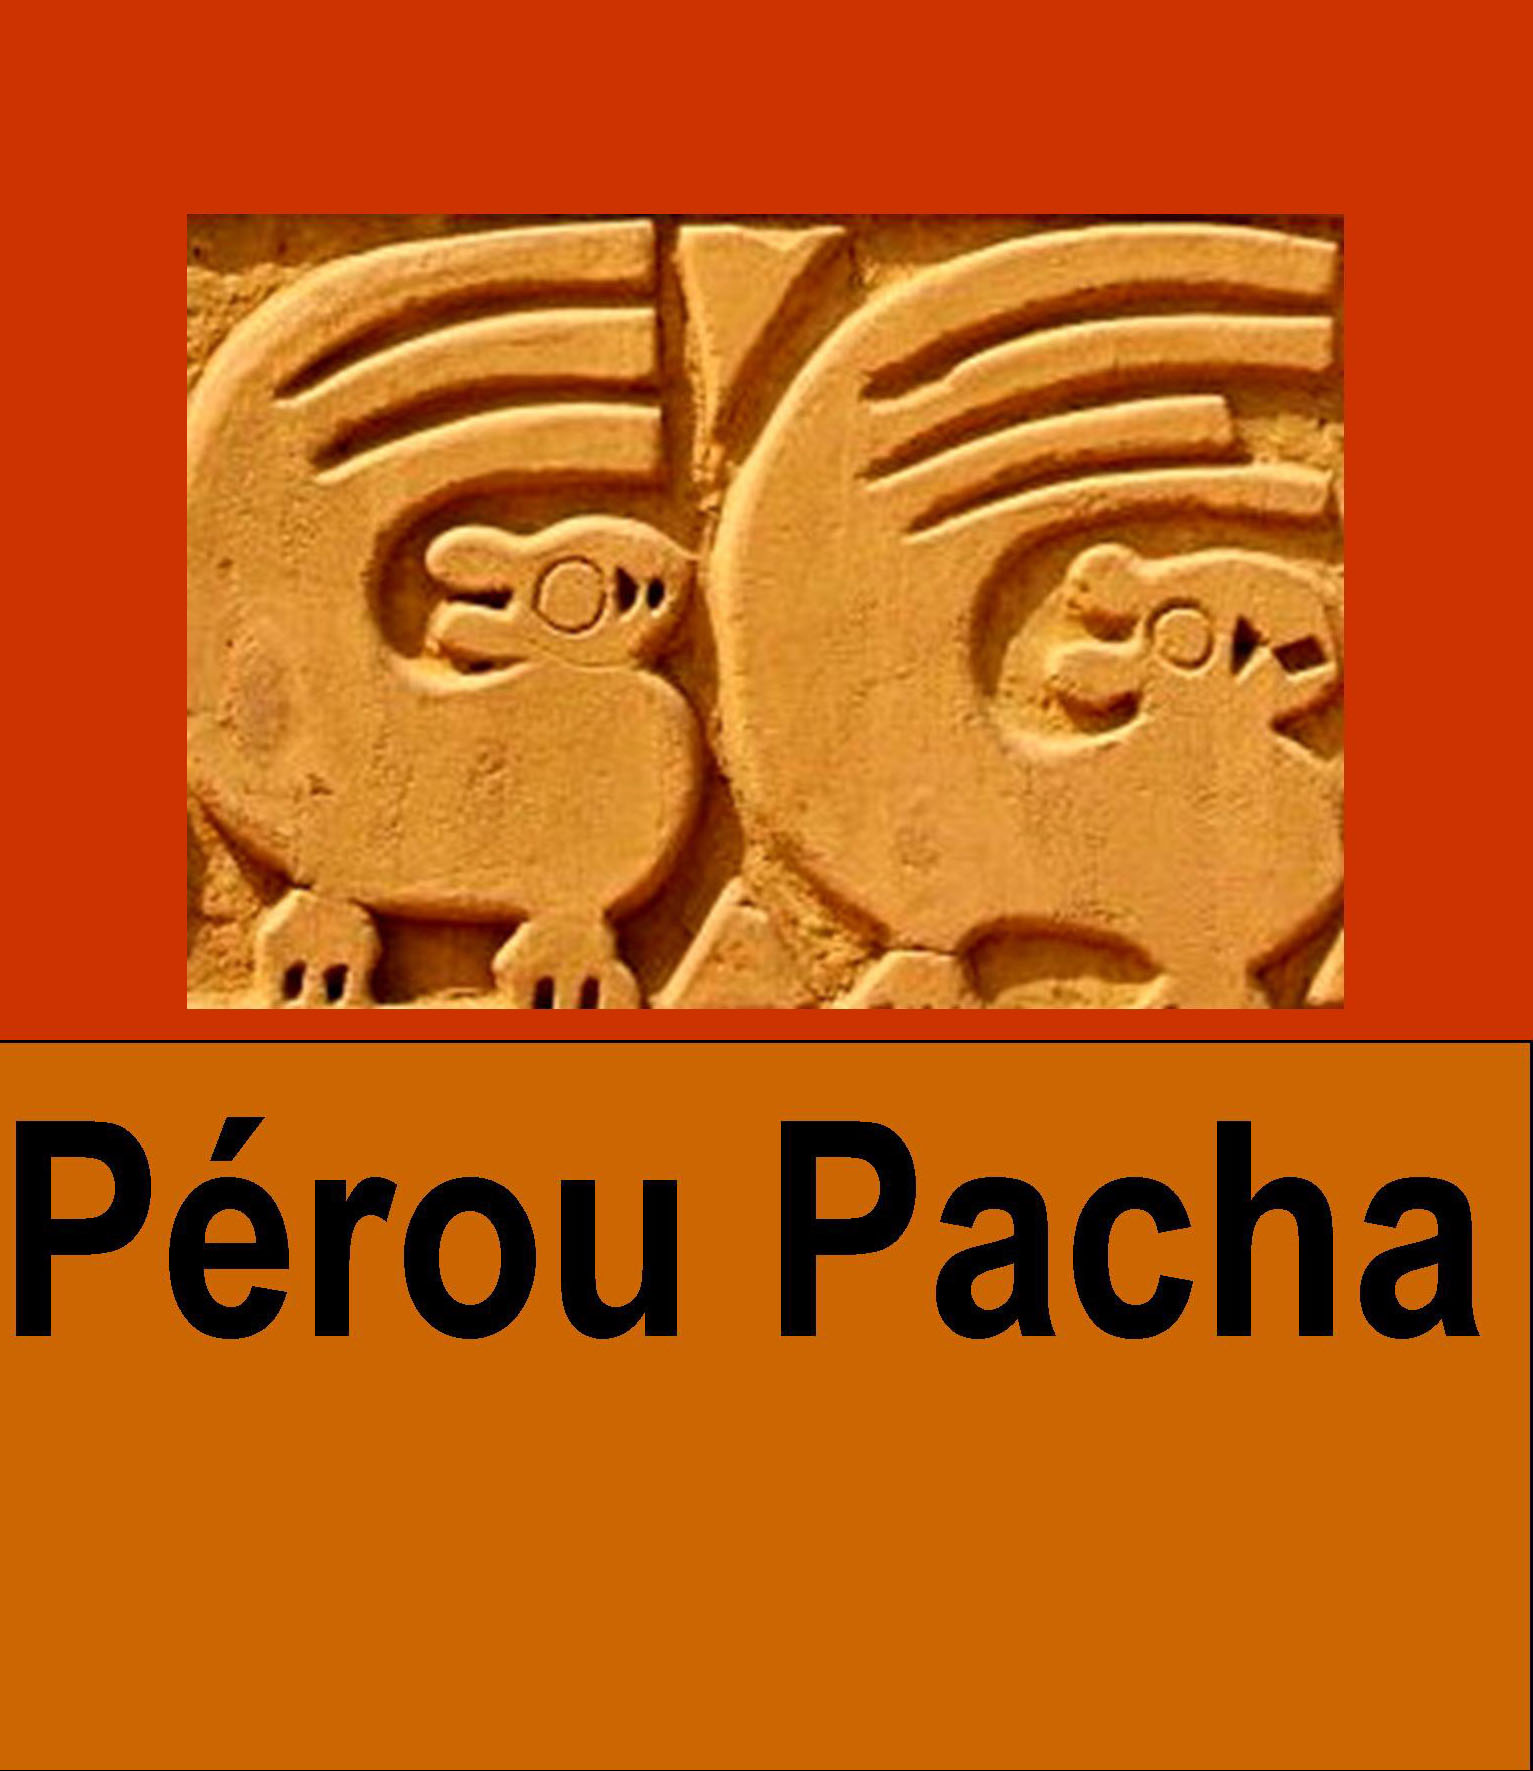 Pérou Pacha (Francia)